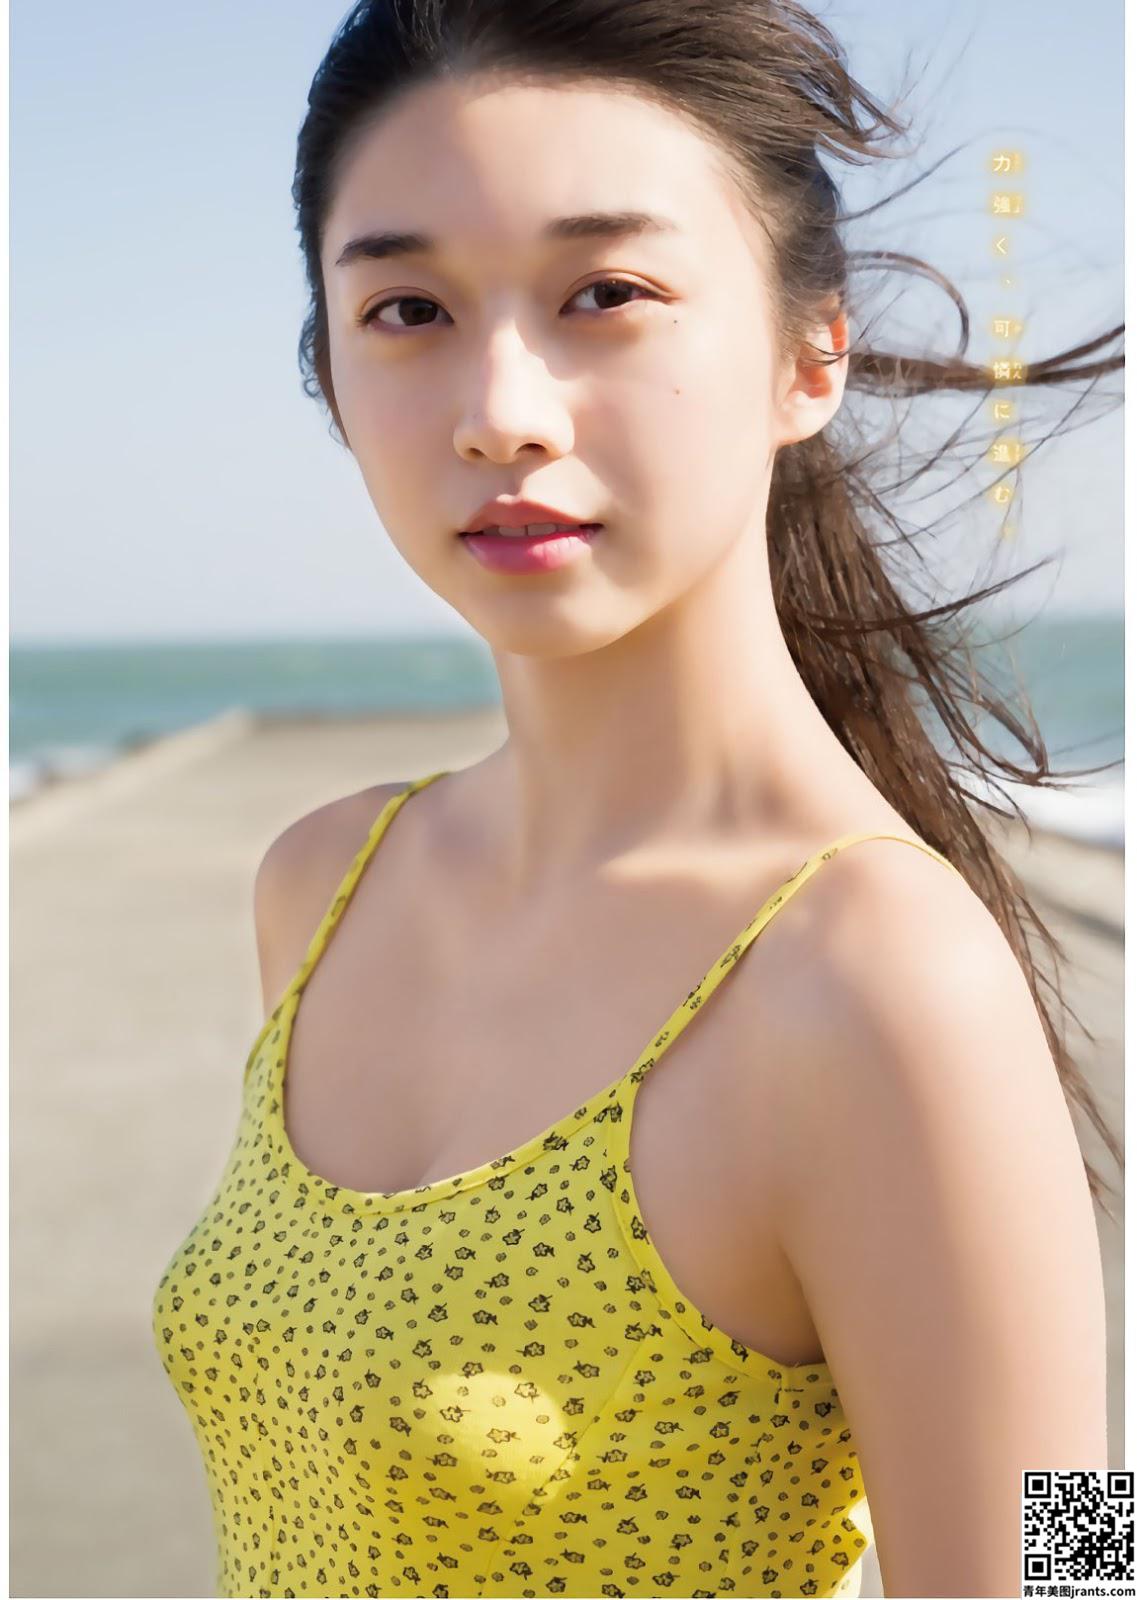 Maria Makino 牧野真莉爱, Shonen Magazine (16P)